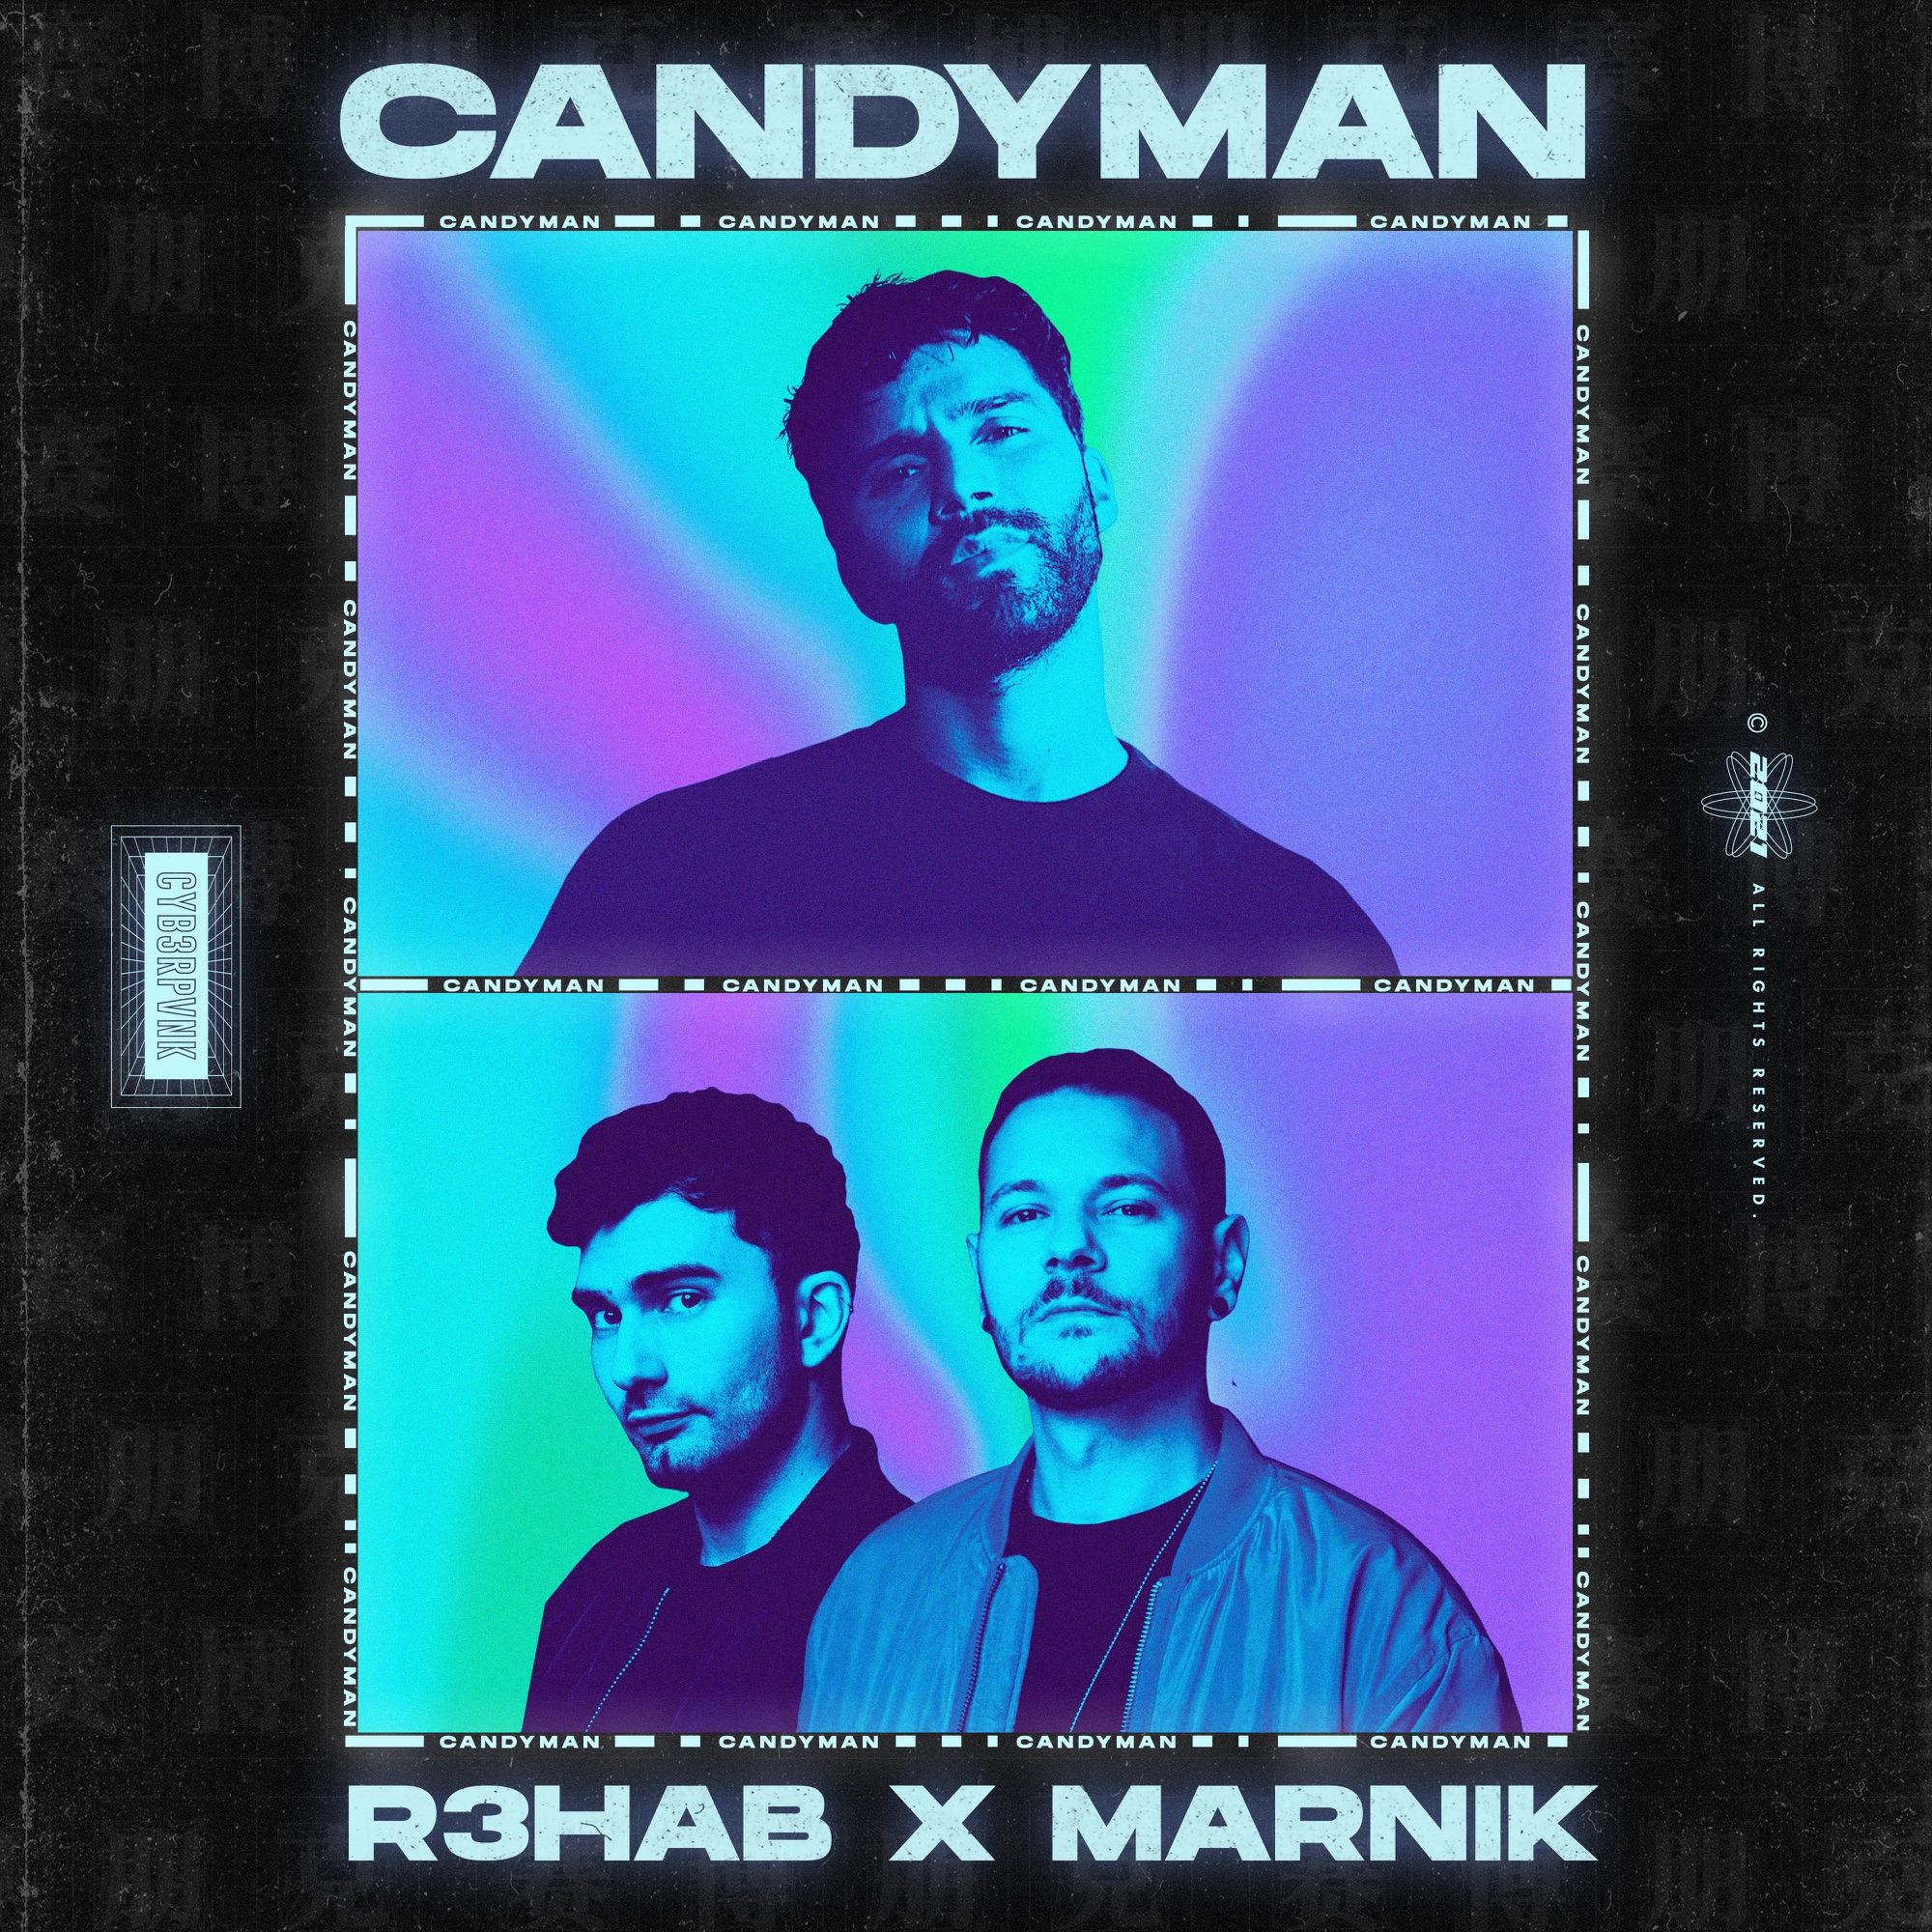 R3HAB & Marnik - Candyman - Single